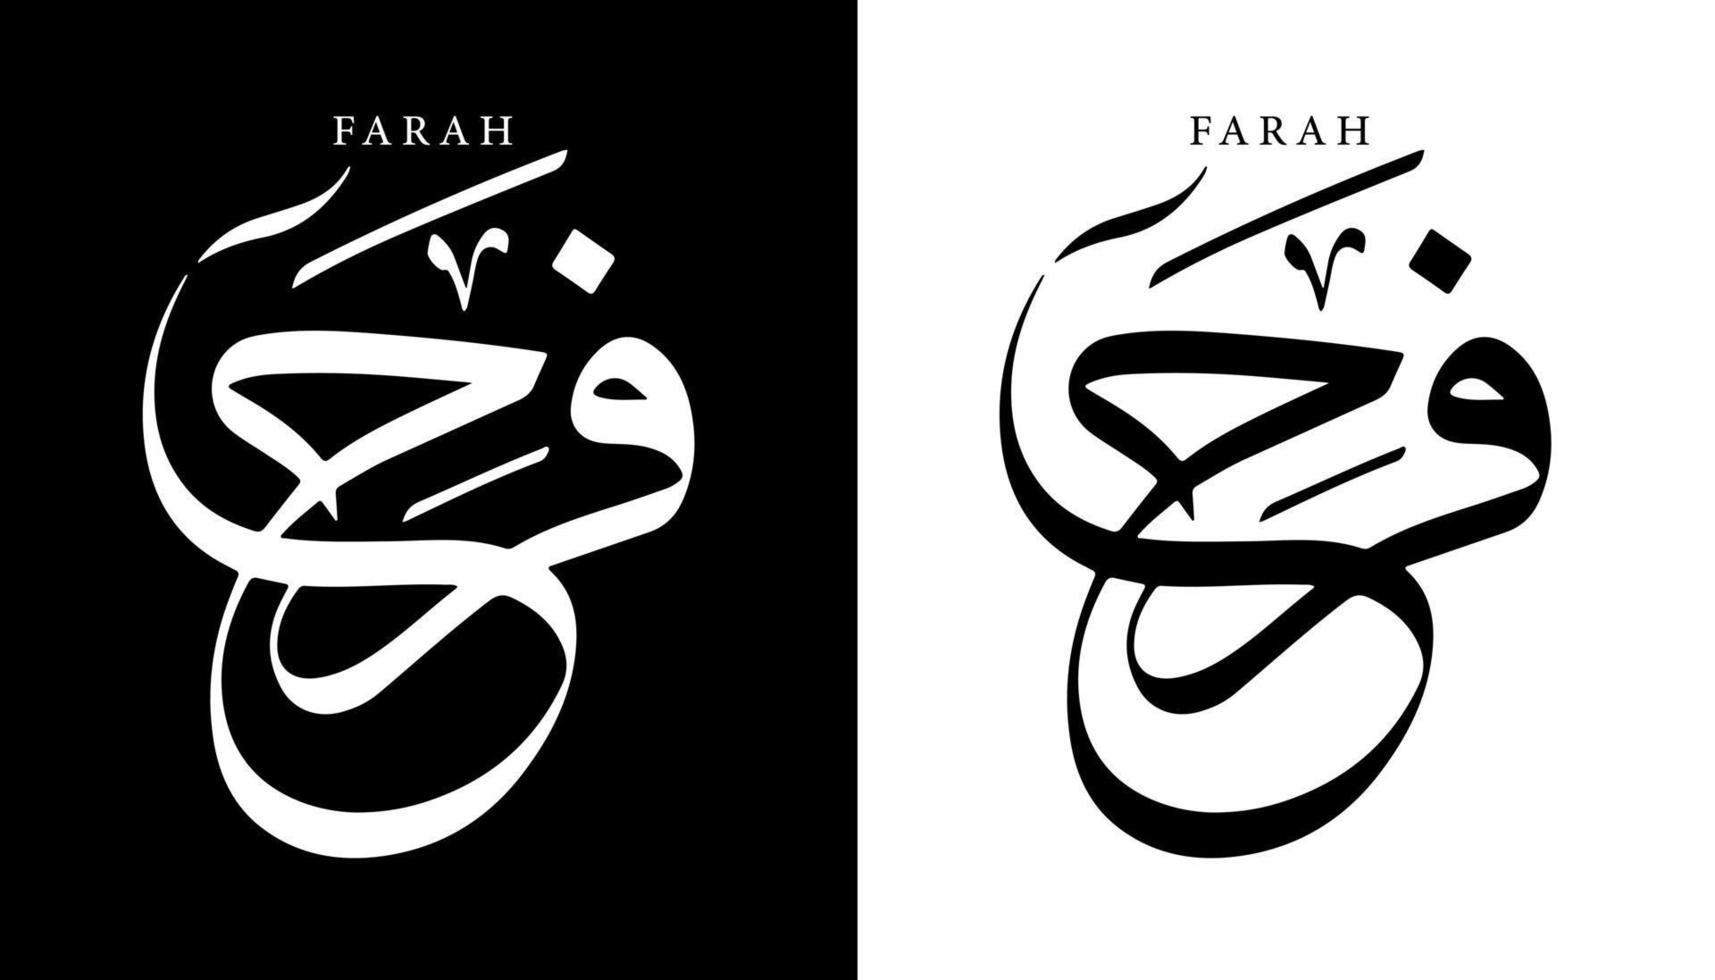 arabisk kalligrafi namn översatt "farah" arabiska bokstäver alfabet teckensnitt bokstäver islamisk logotyp vektorillustration vektor